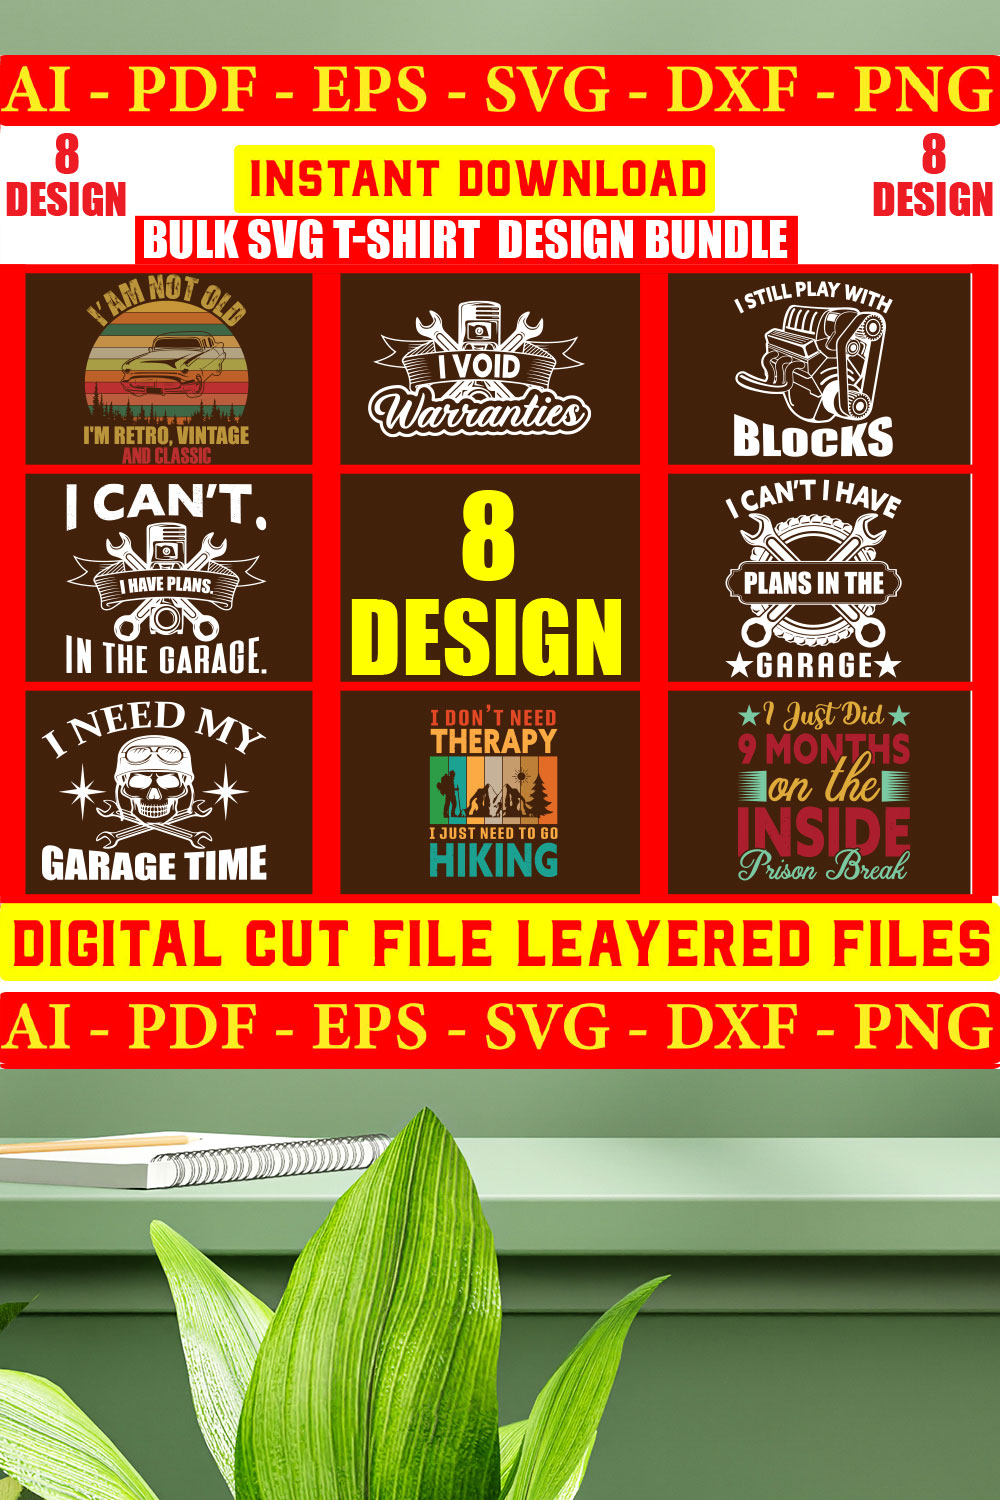 Bulk SVG T-shirt Design Bundle Vol- 03 pinterest preview image.